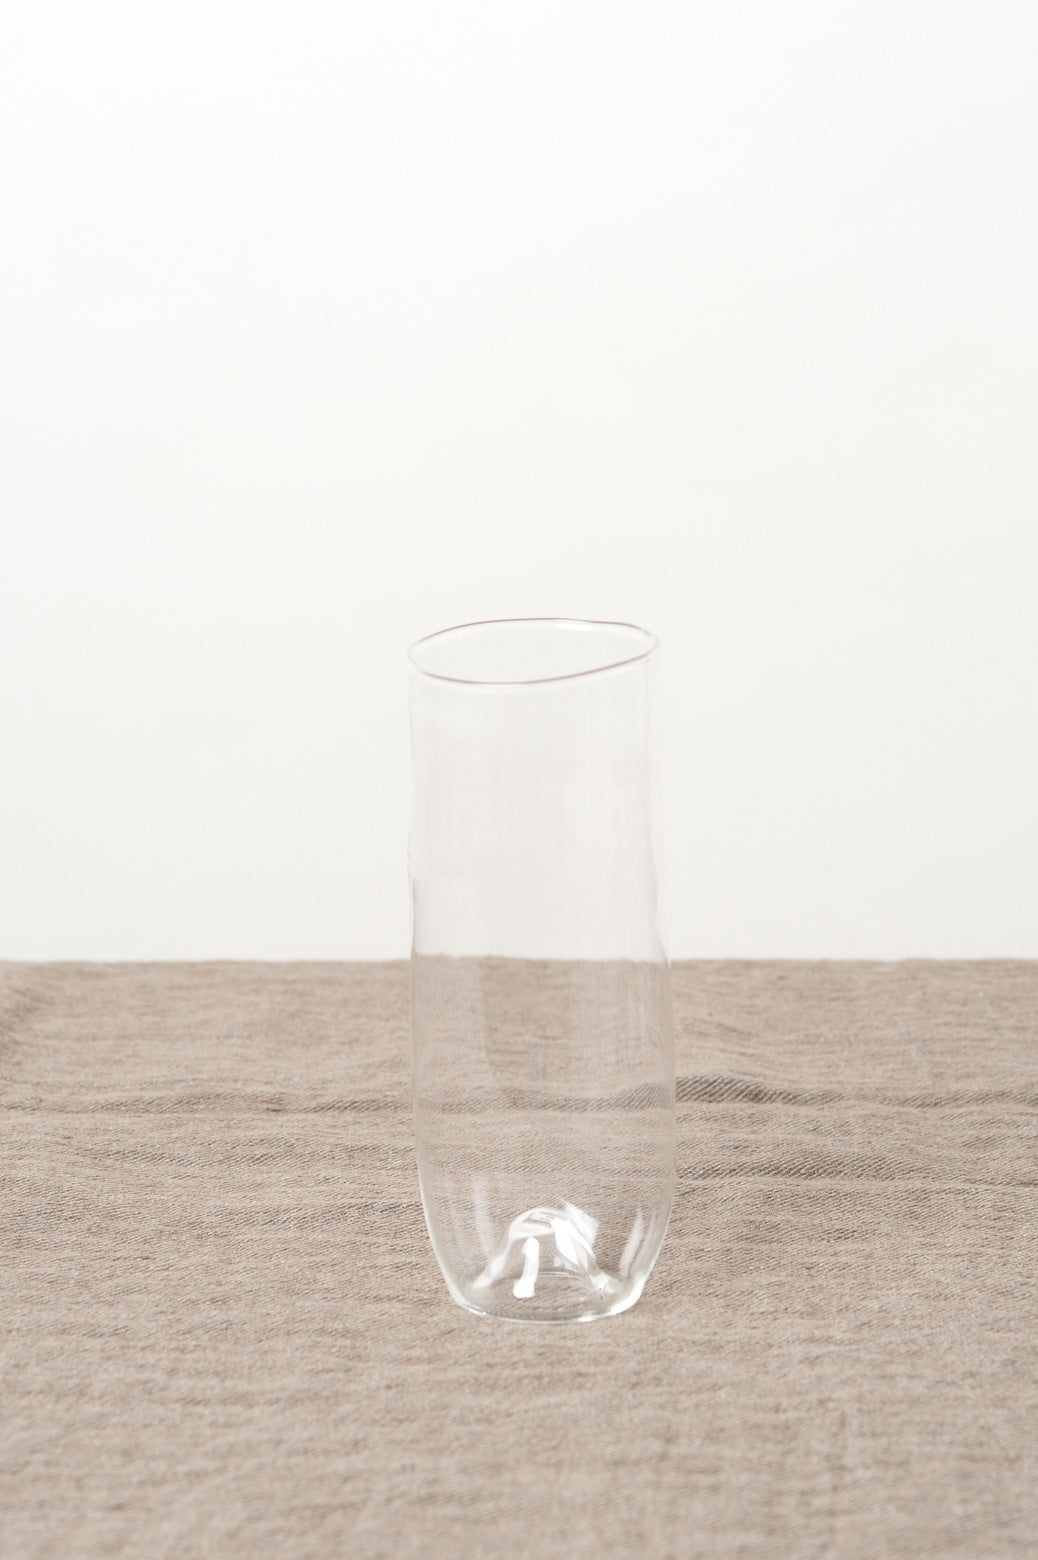 Malfatti Glass prosecco glass